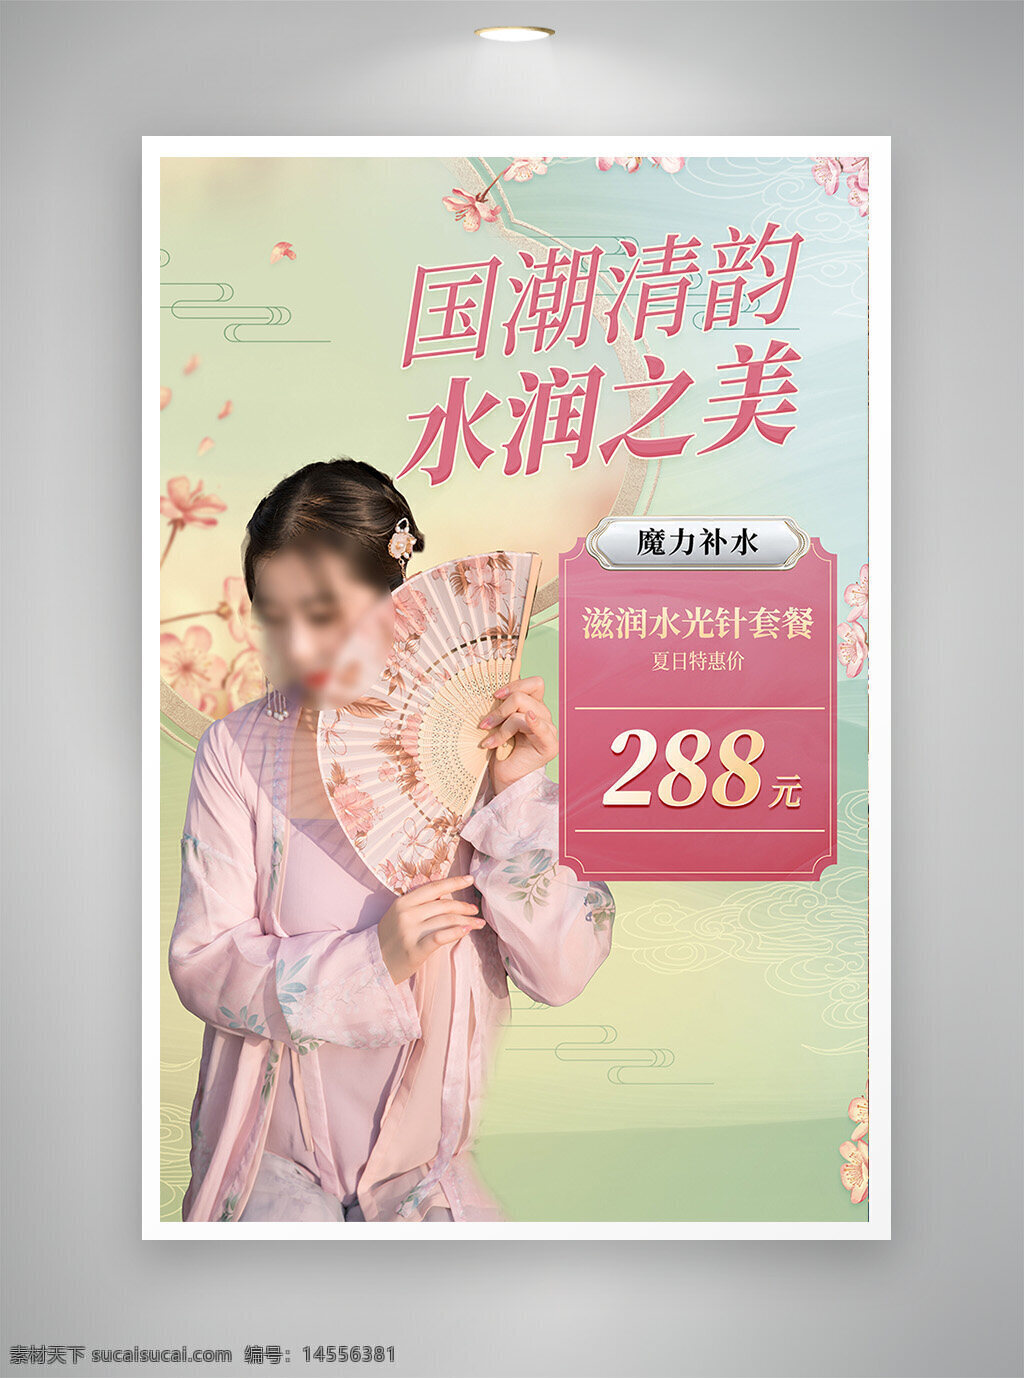 中国风海报 促销海报 节日海报 国潮新品